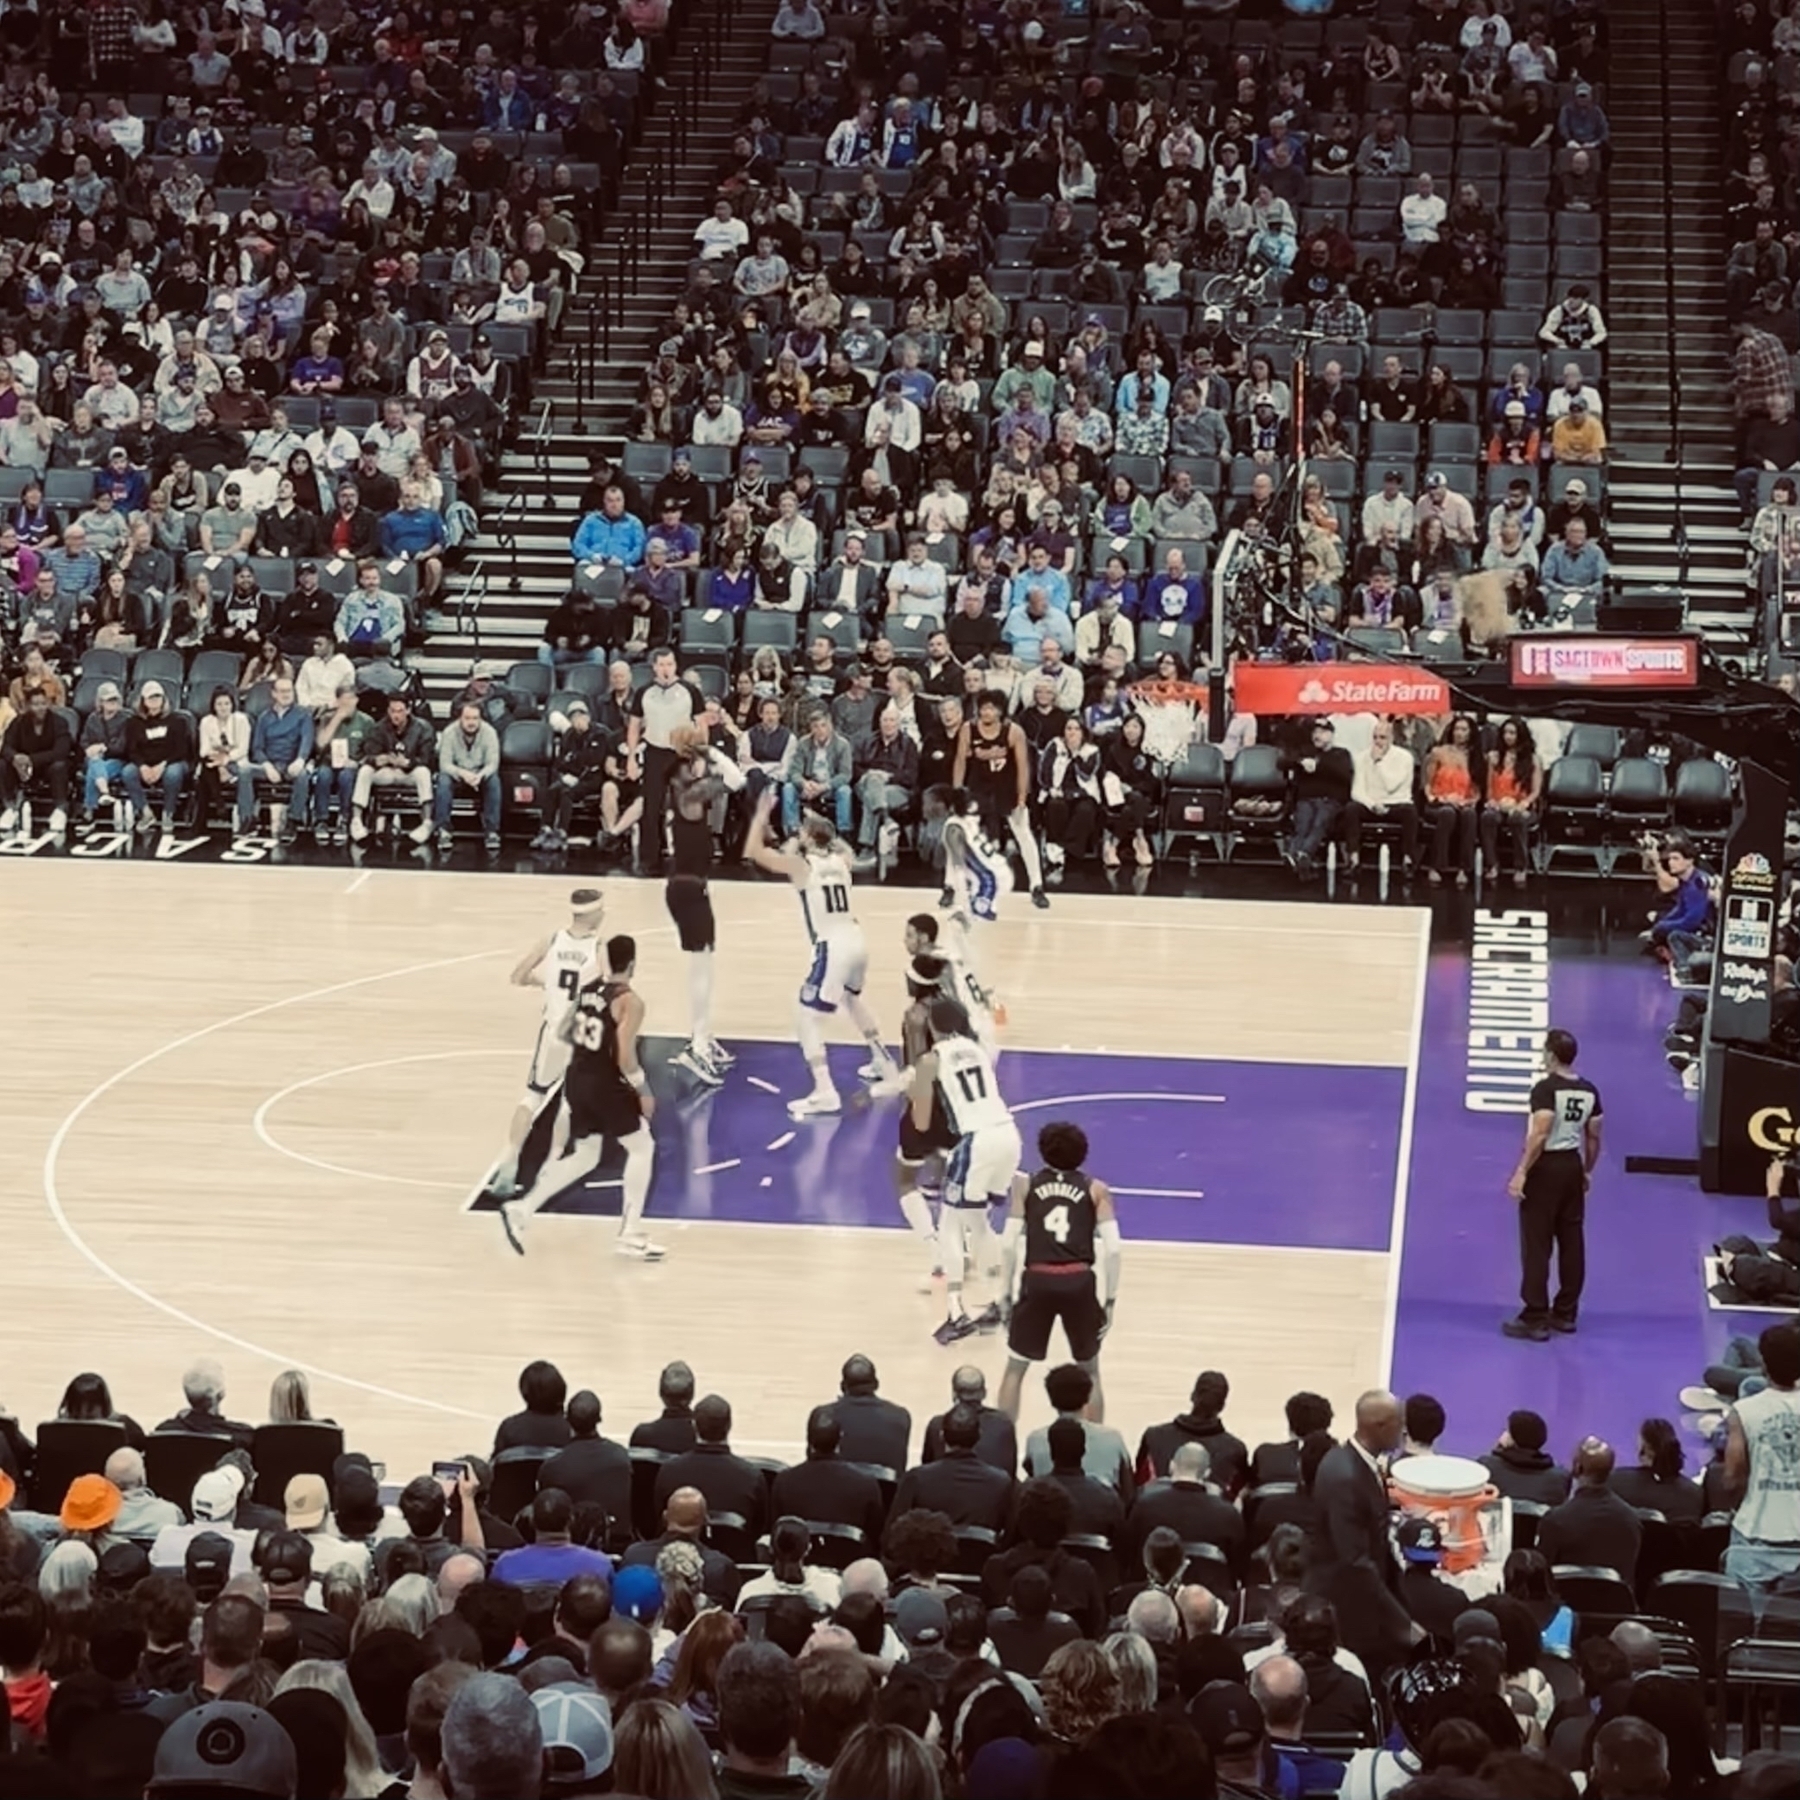 Basketball game in Sacramento.